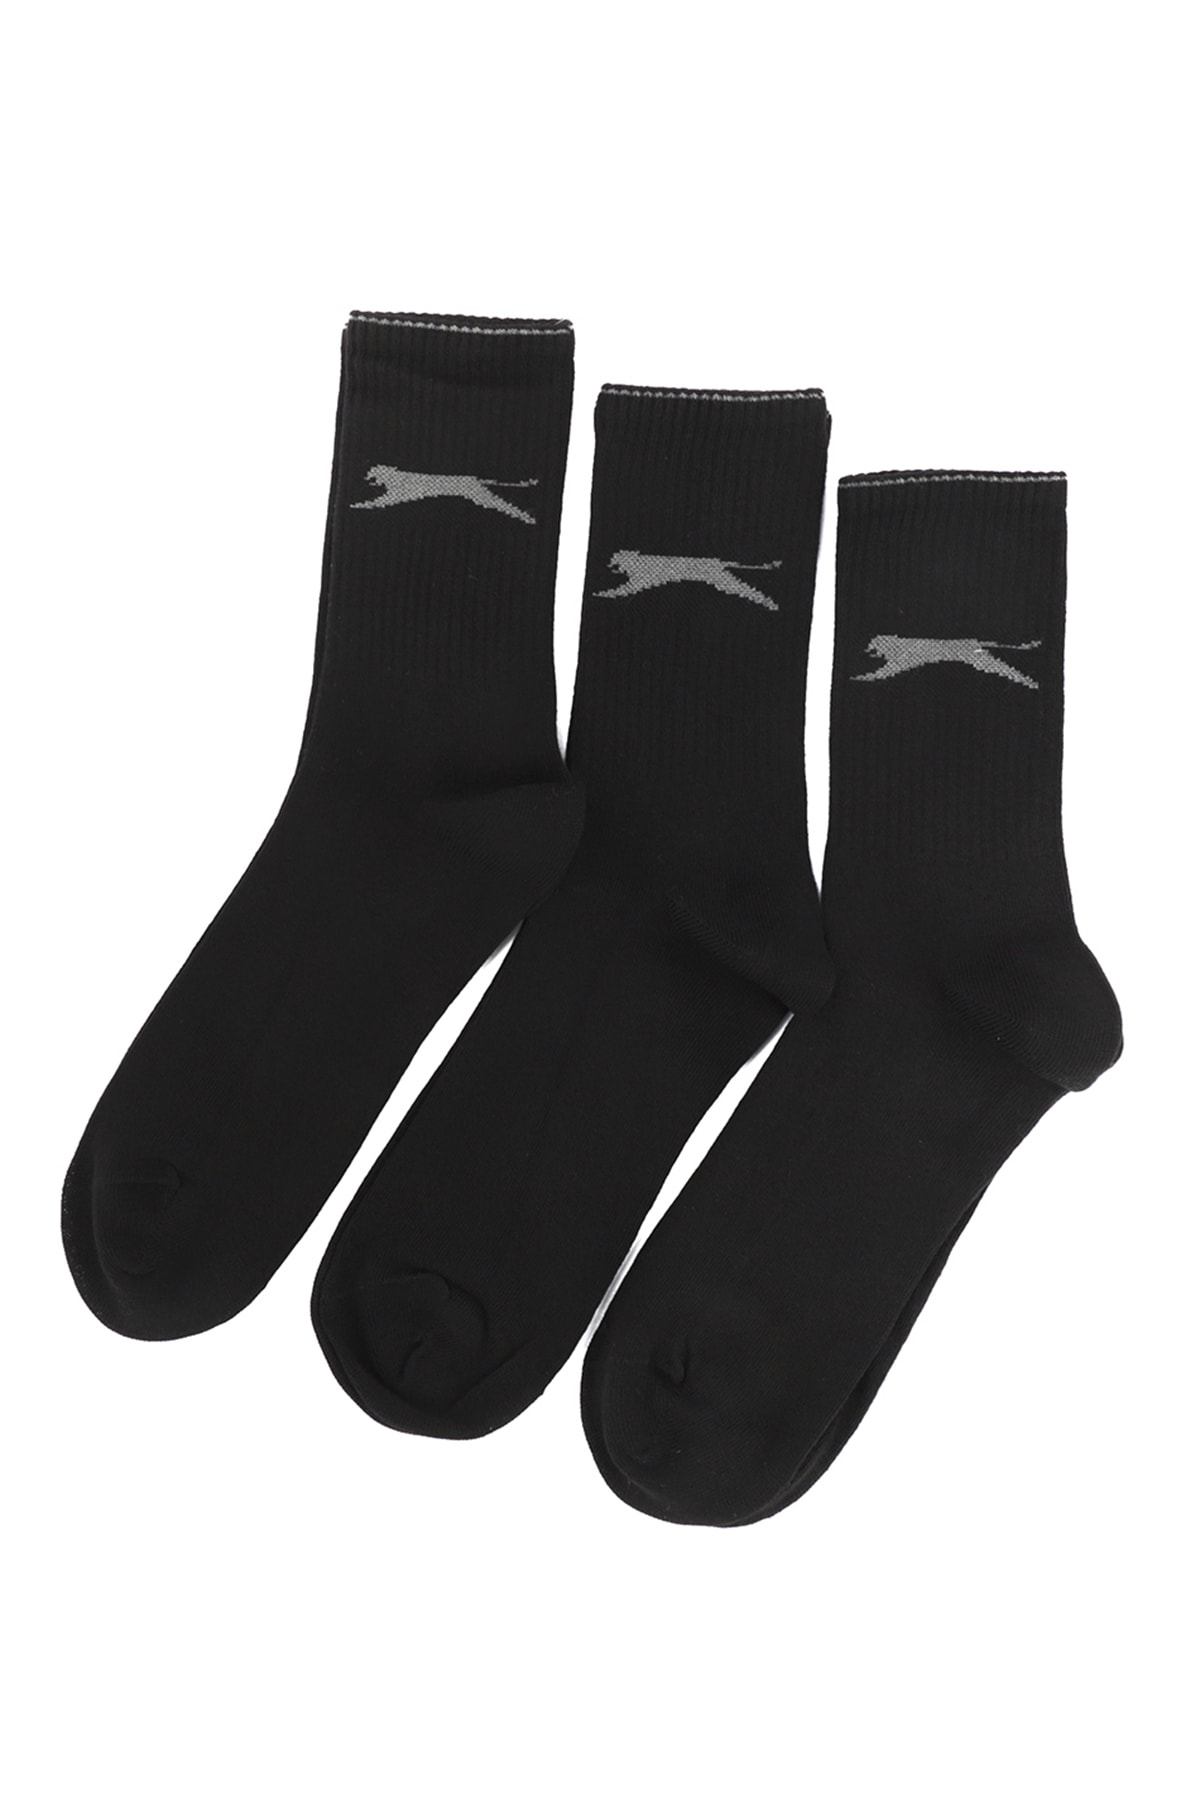 Levně Slazenger Jago Men's Sports Socks 40-44 Black Color, Set of 3